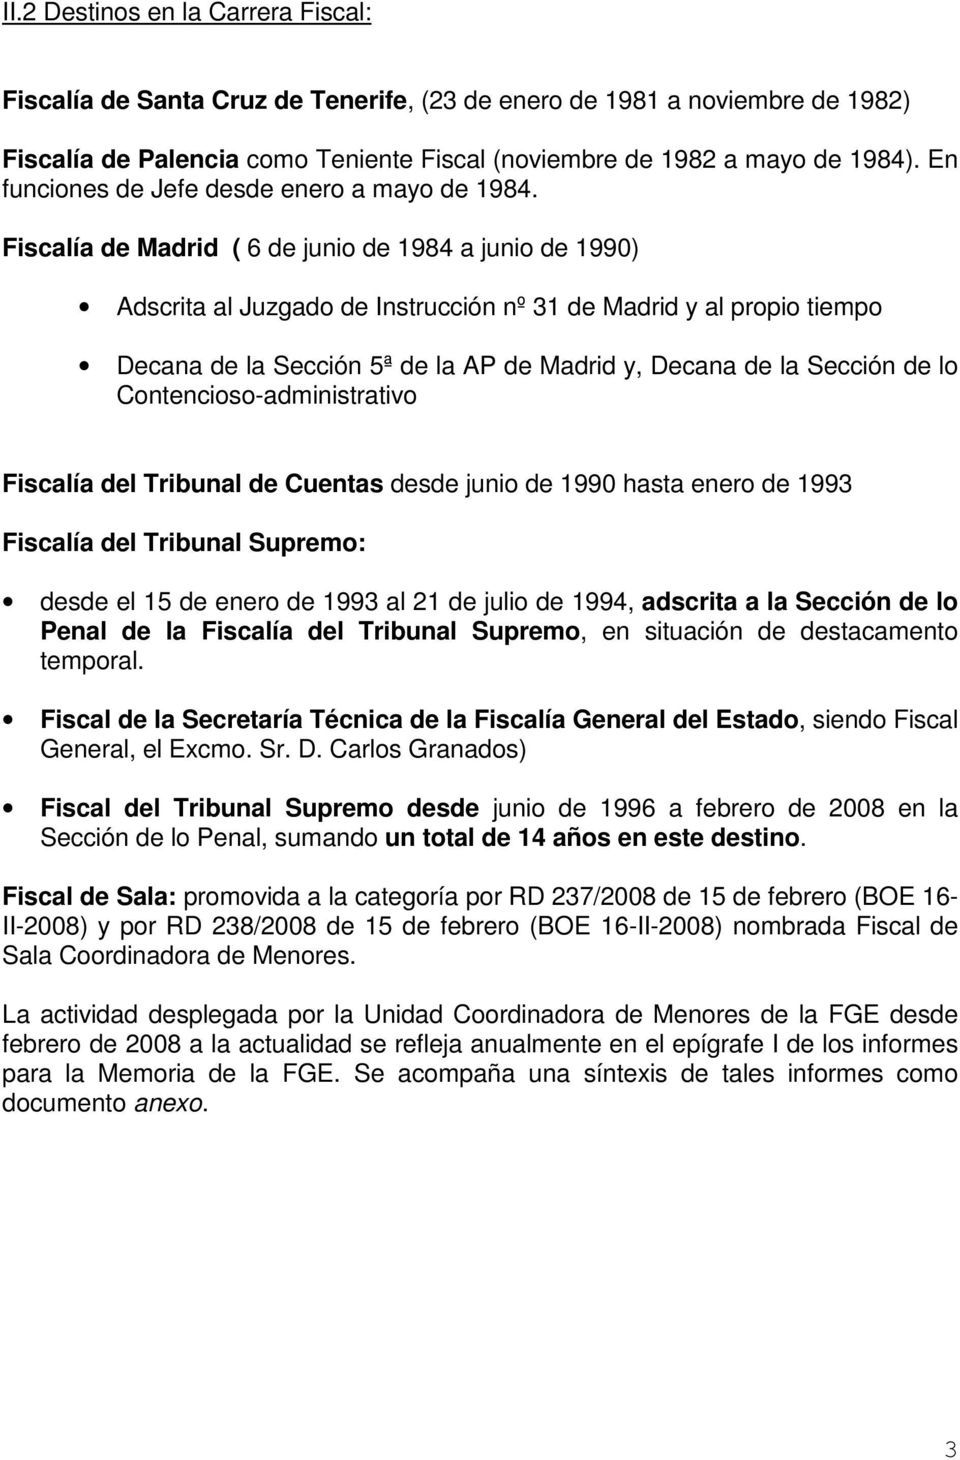 Fiscalía de Madrid ( 6 de junio de 1984 a junio de 1990) Adscrita al Juzgado de Instrucción nº 31 de Madrid y al propio tiempo Decana de la Sección 5ª de la AP de Madrid y, Decana de la Sección de lo